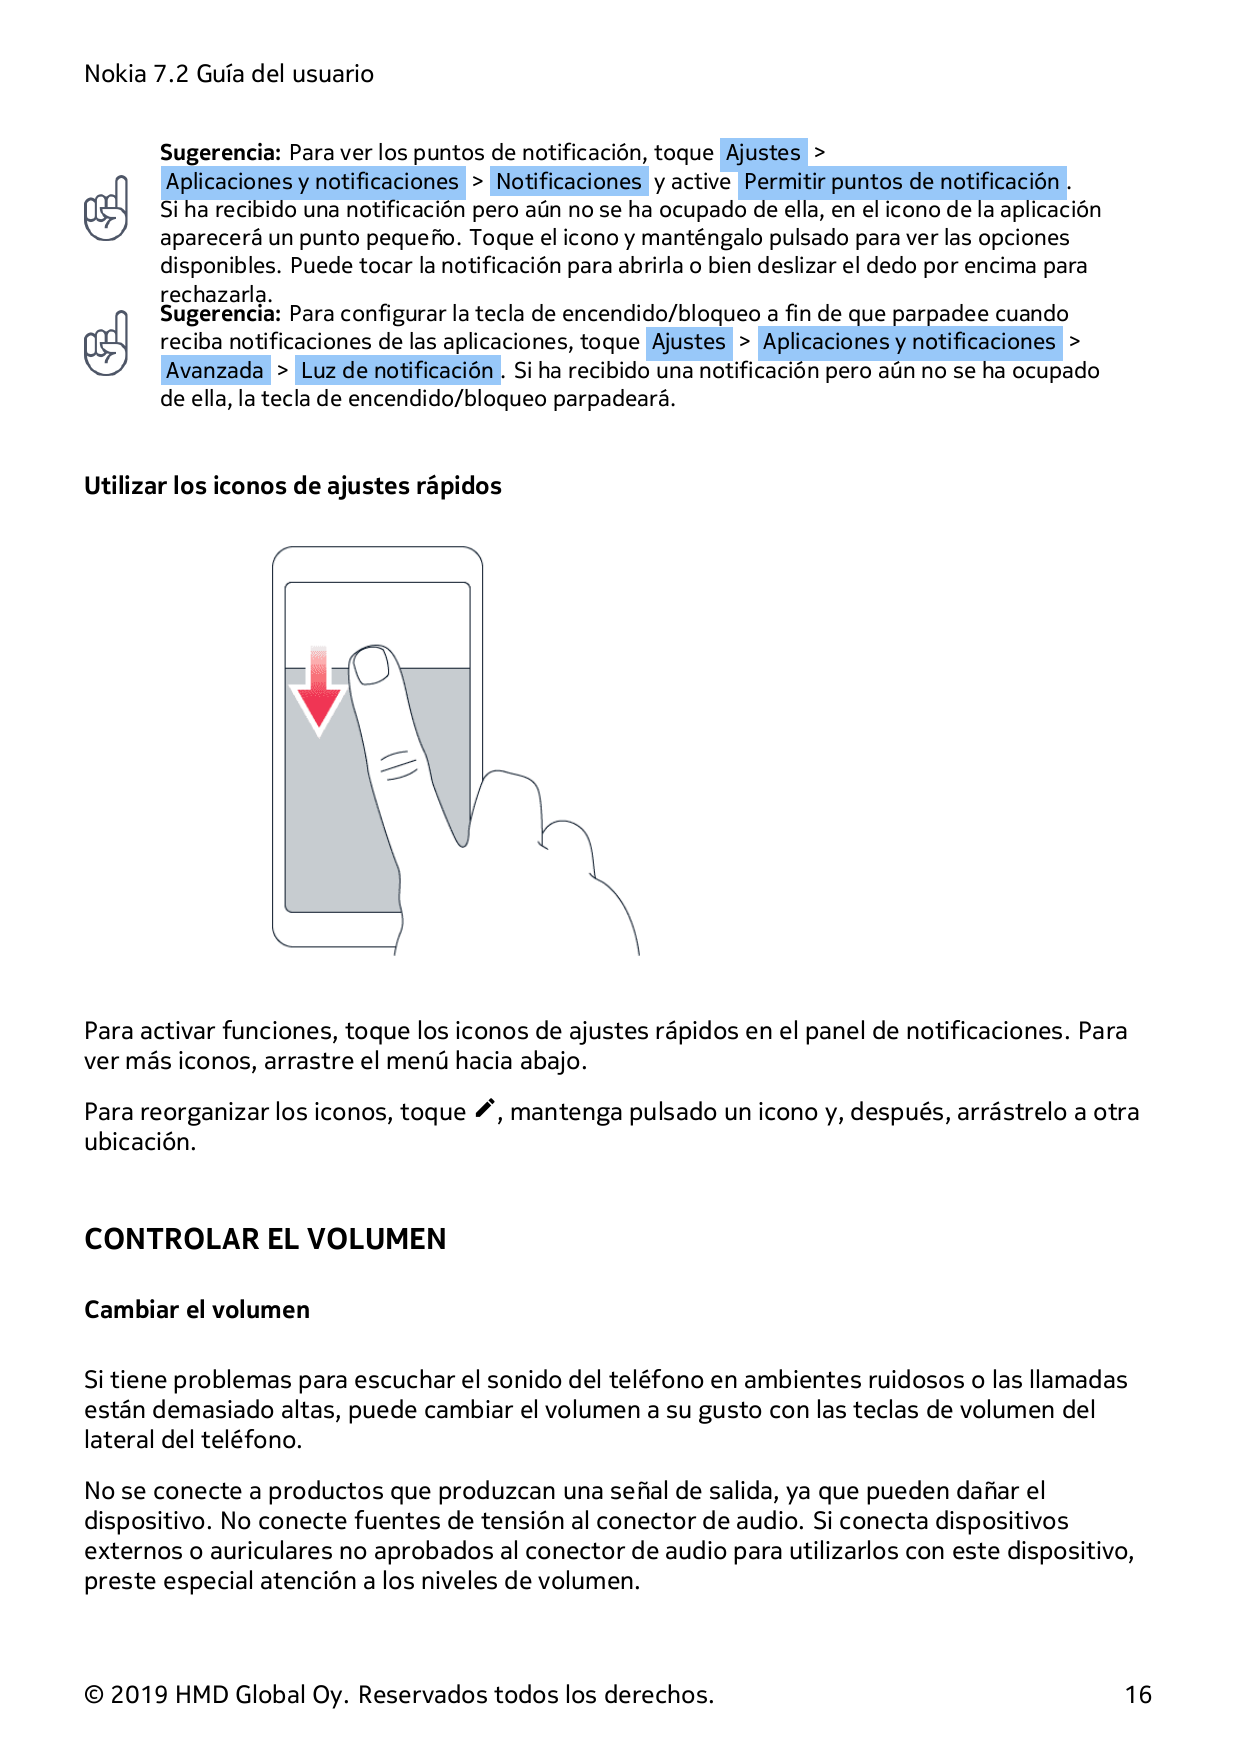 Nokia 7.2 Guía del usuarioSugerencia: Para ver los puntos de notificación, toque Ajustes >Aplicaciones y notificaciones > Notifi